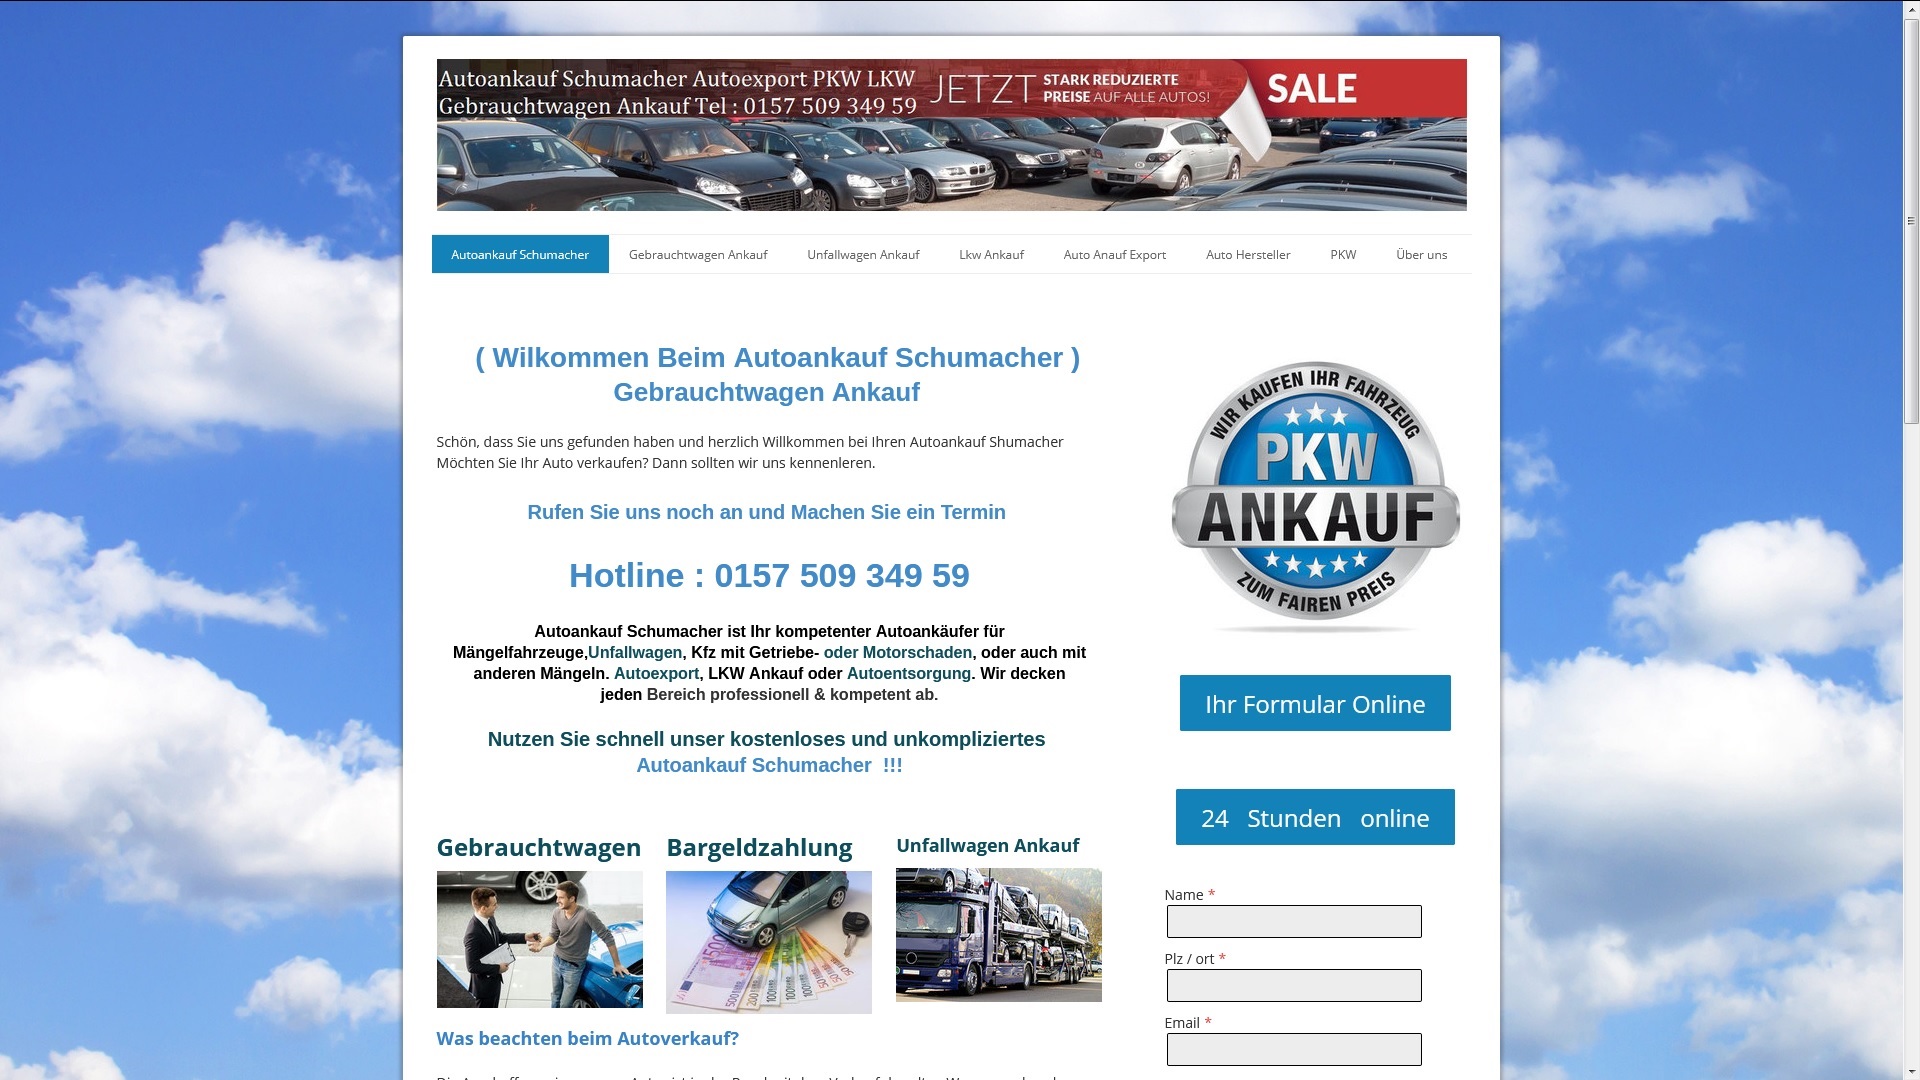 Autoankauf Nordhausen ist mit 15 Jahren Erfahrung Profi in Sachen PKW-Ankauf